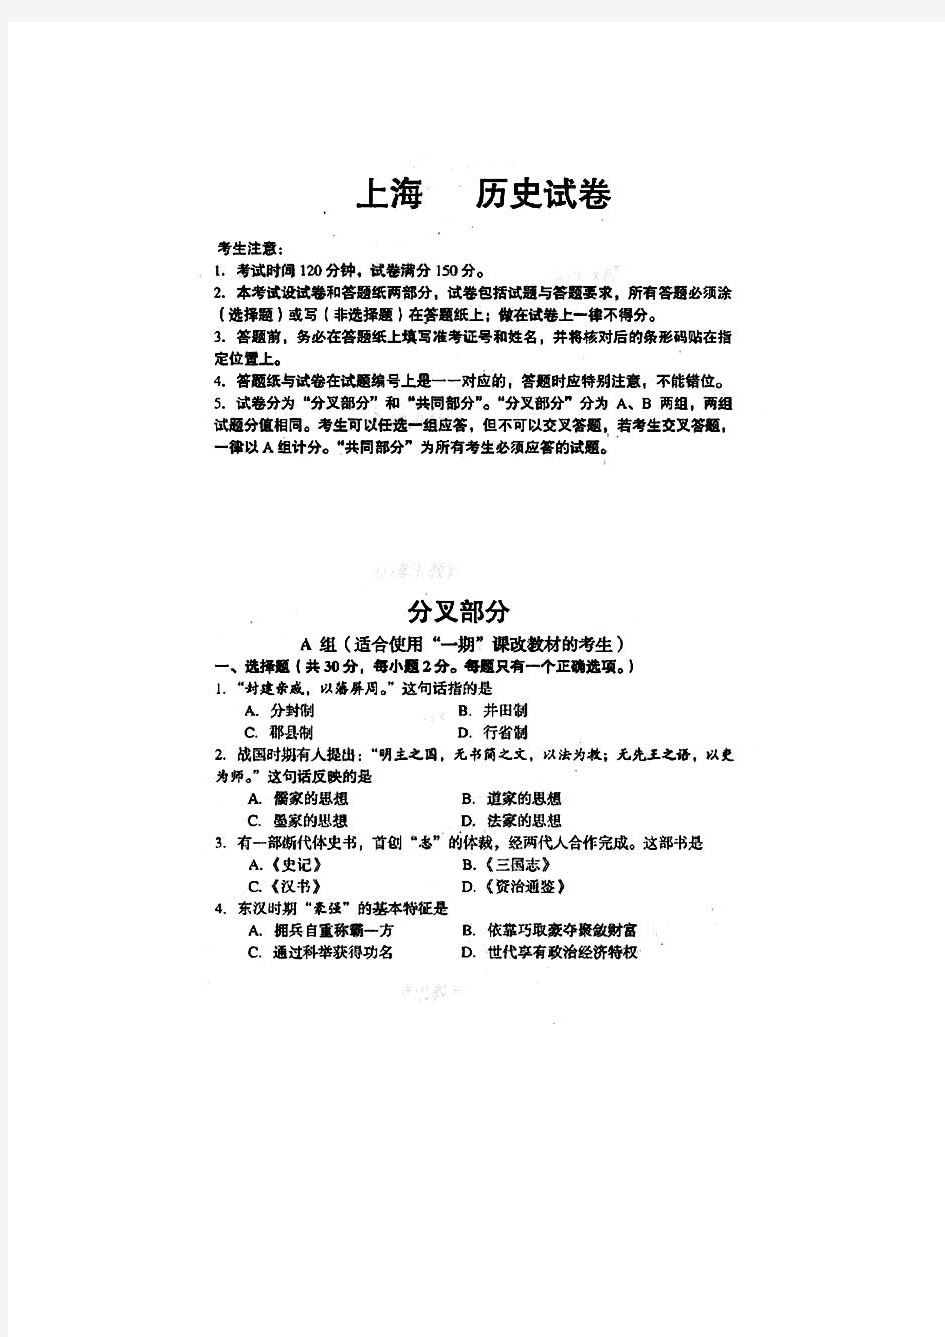 2008年高考历史试题及参考答案(上海卷)